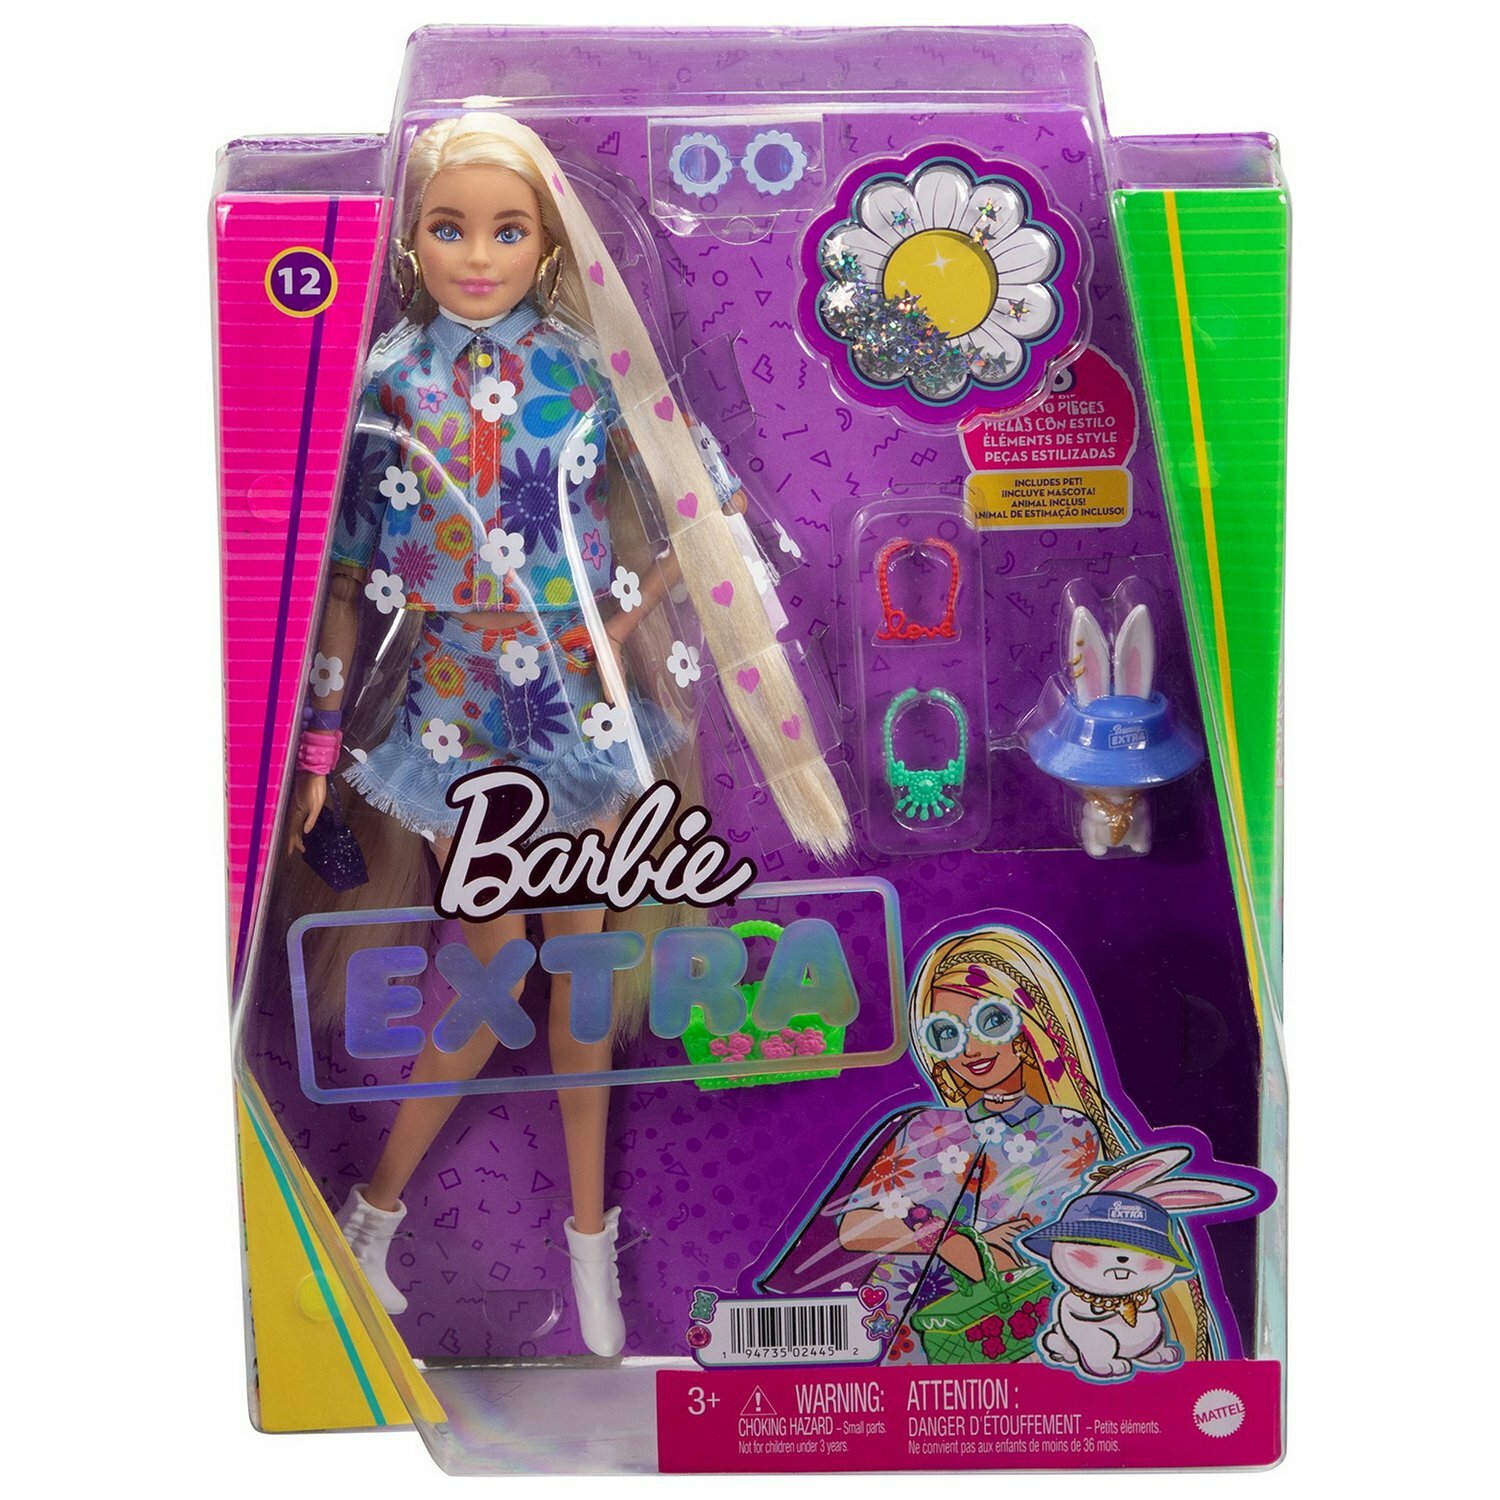 Кукла Barbie в одежде с цветочным принтом, 30 см, HDJ45